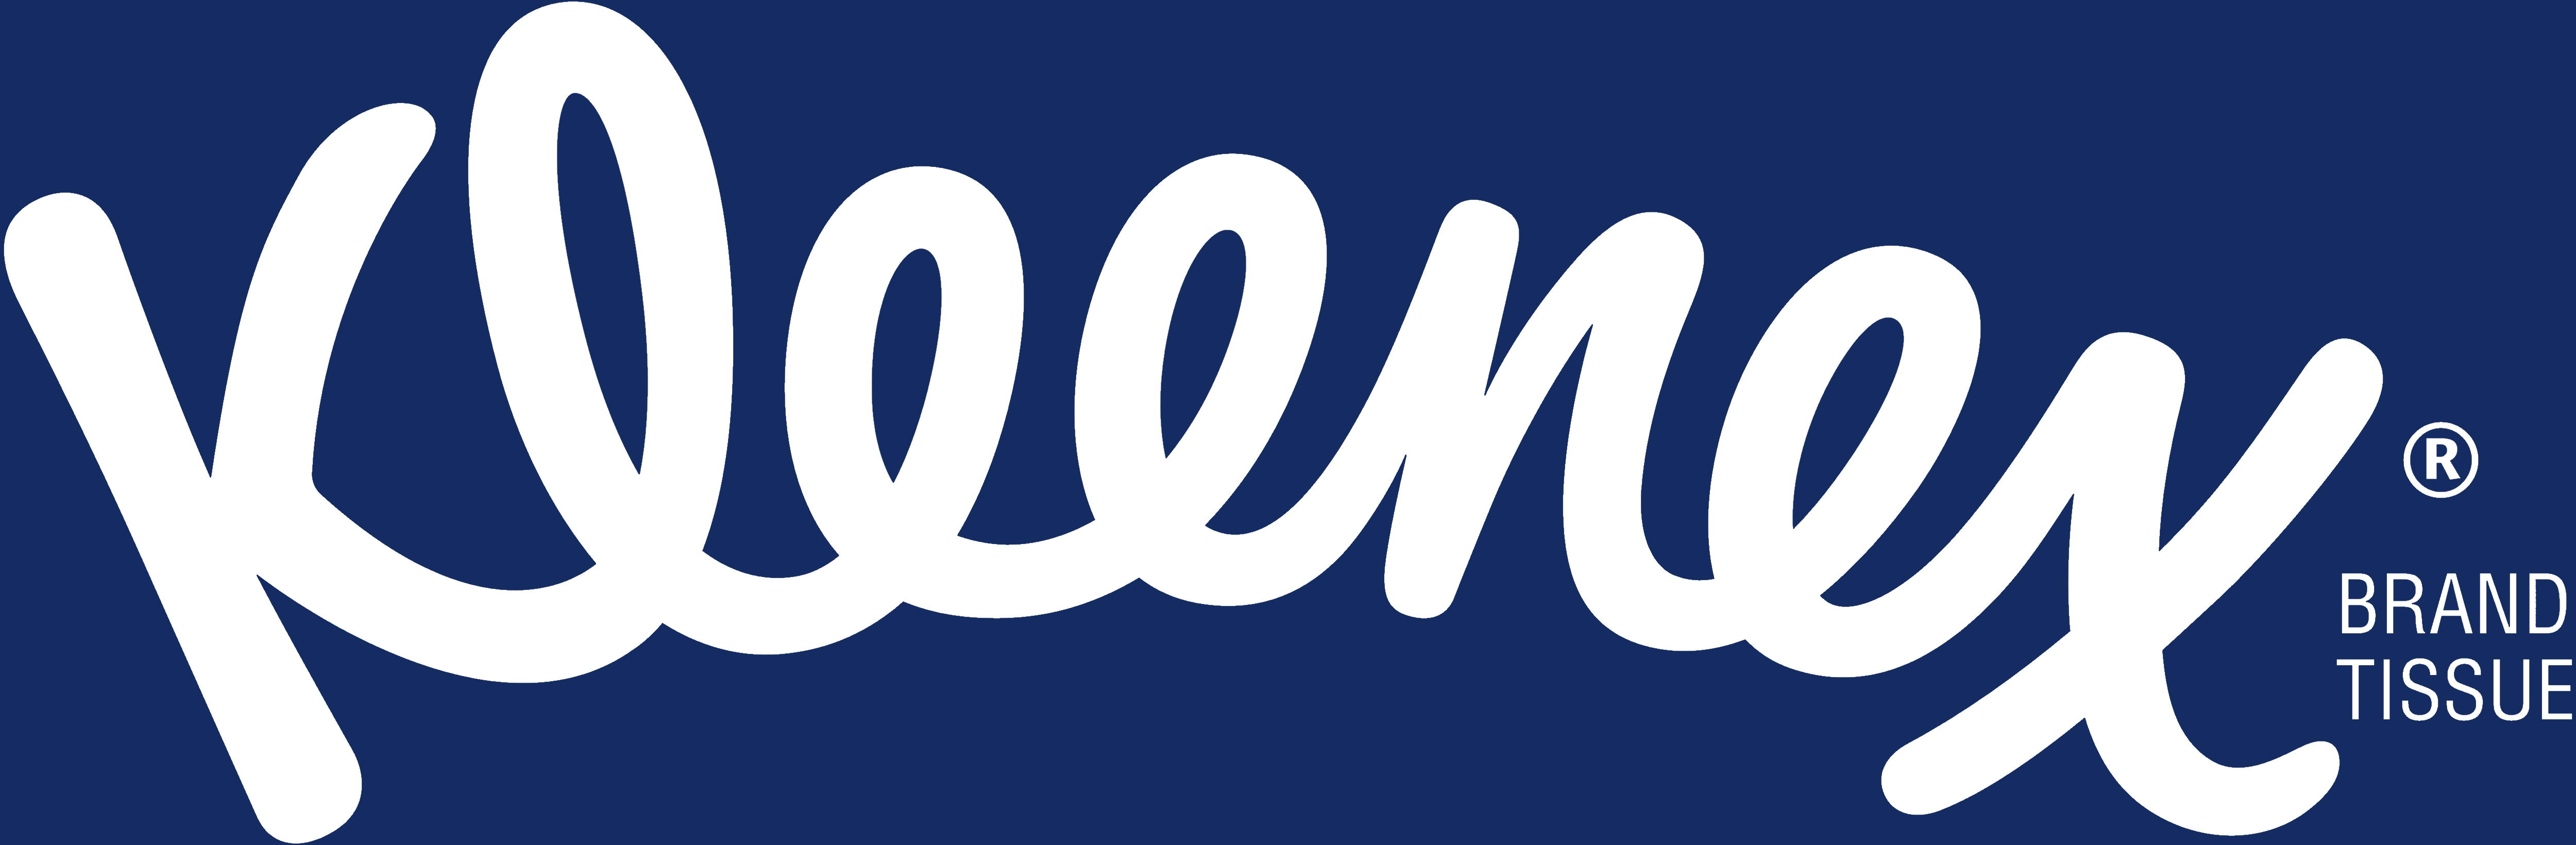 Kleenix Logo - Kleenex – Logos Download